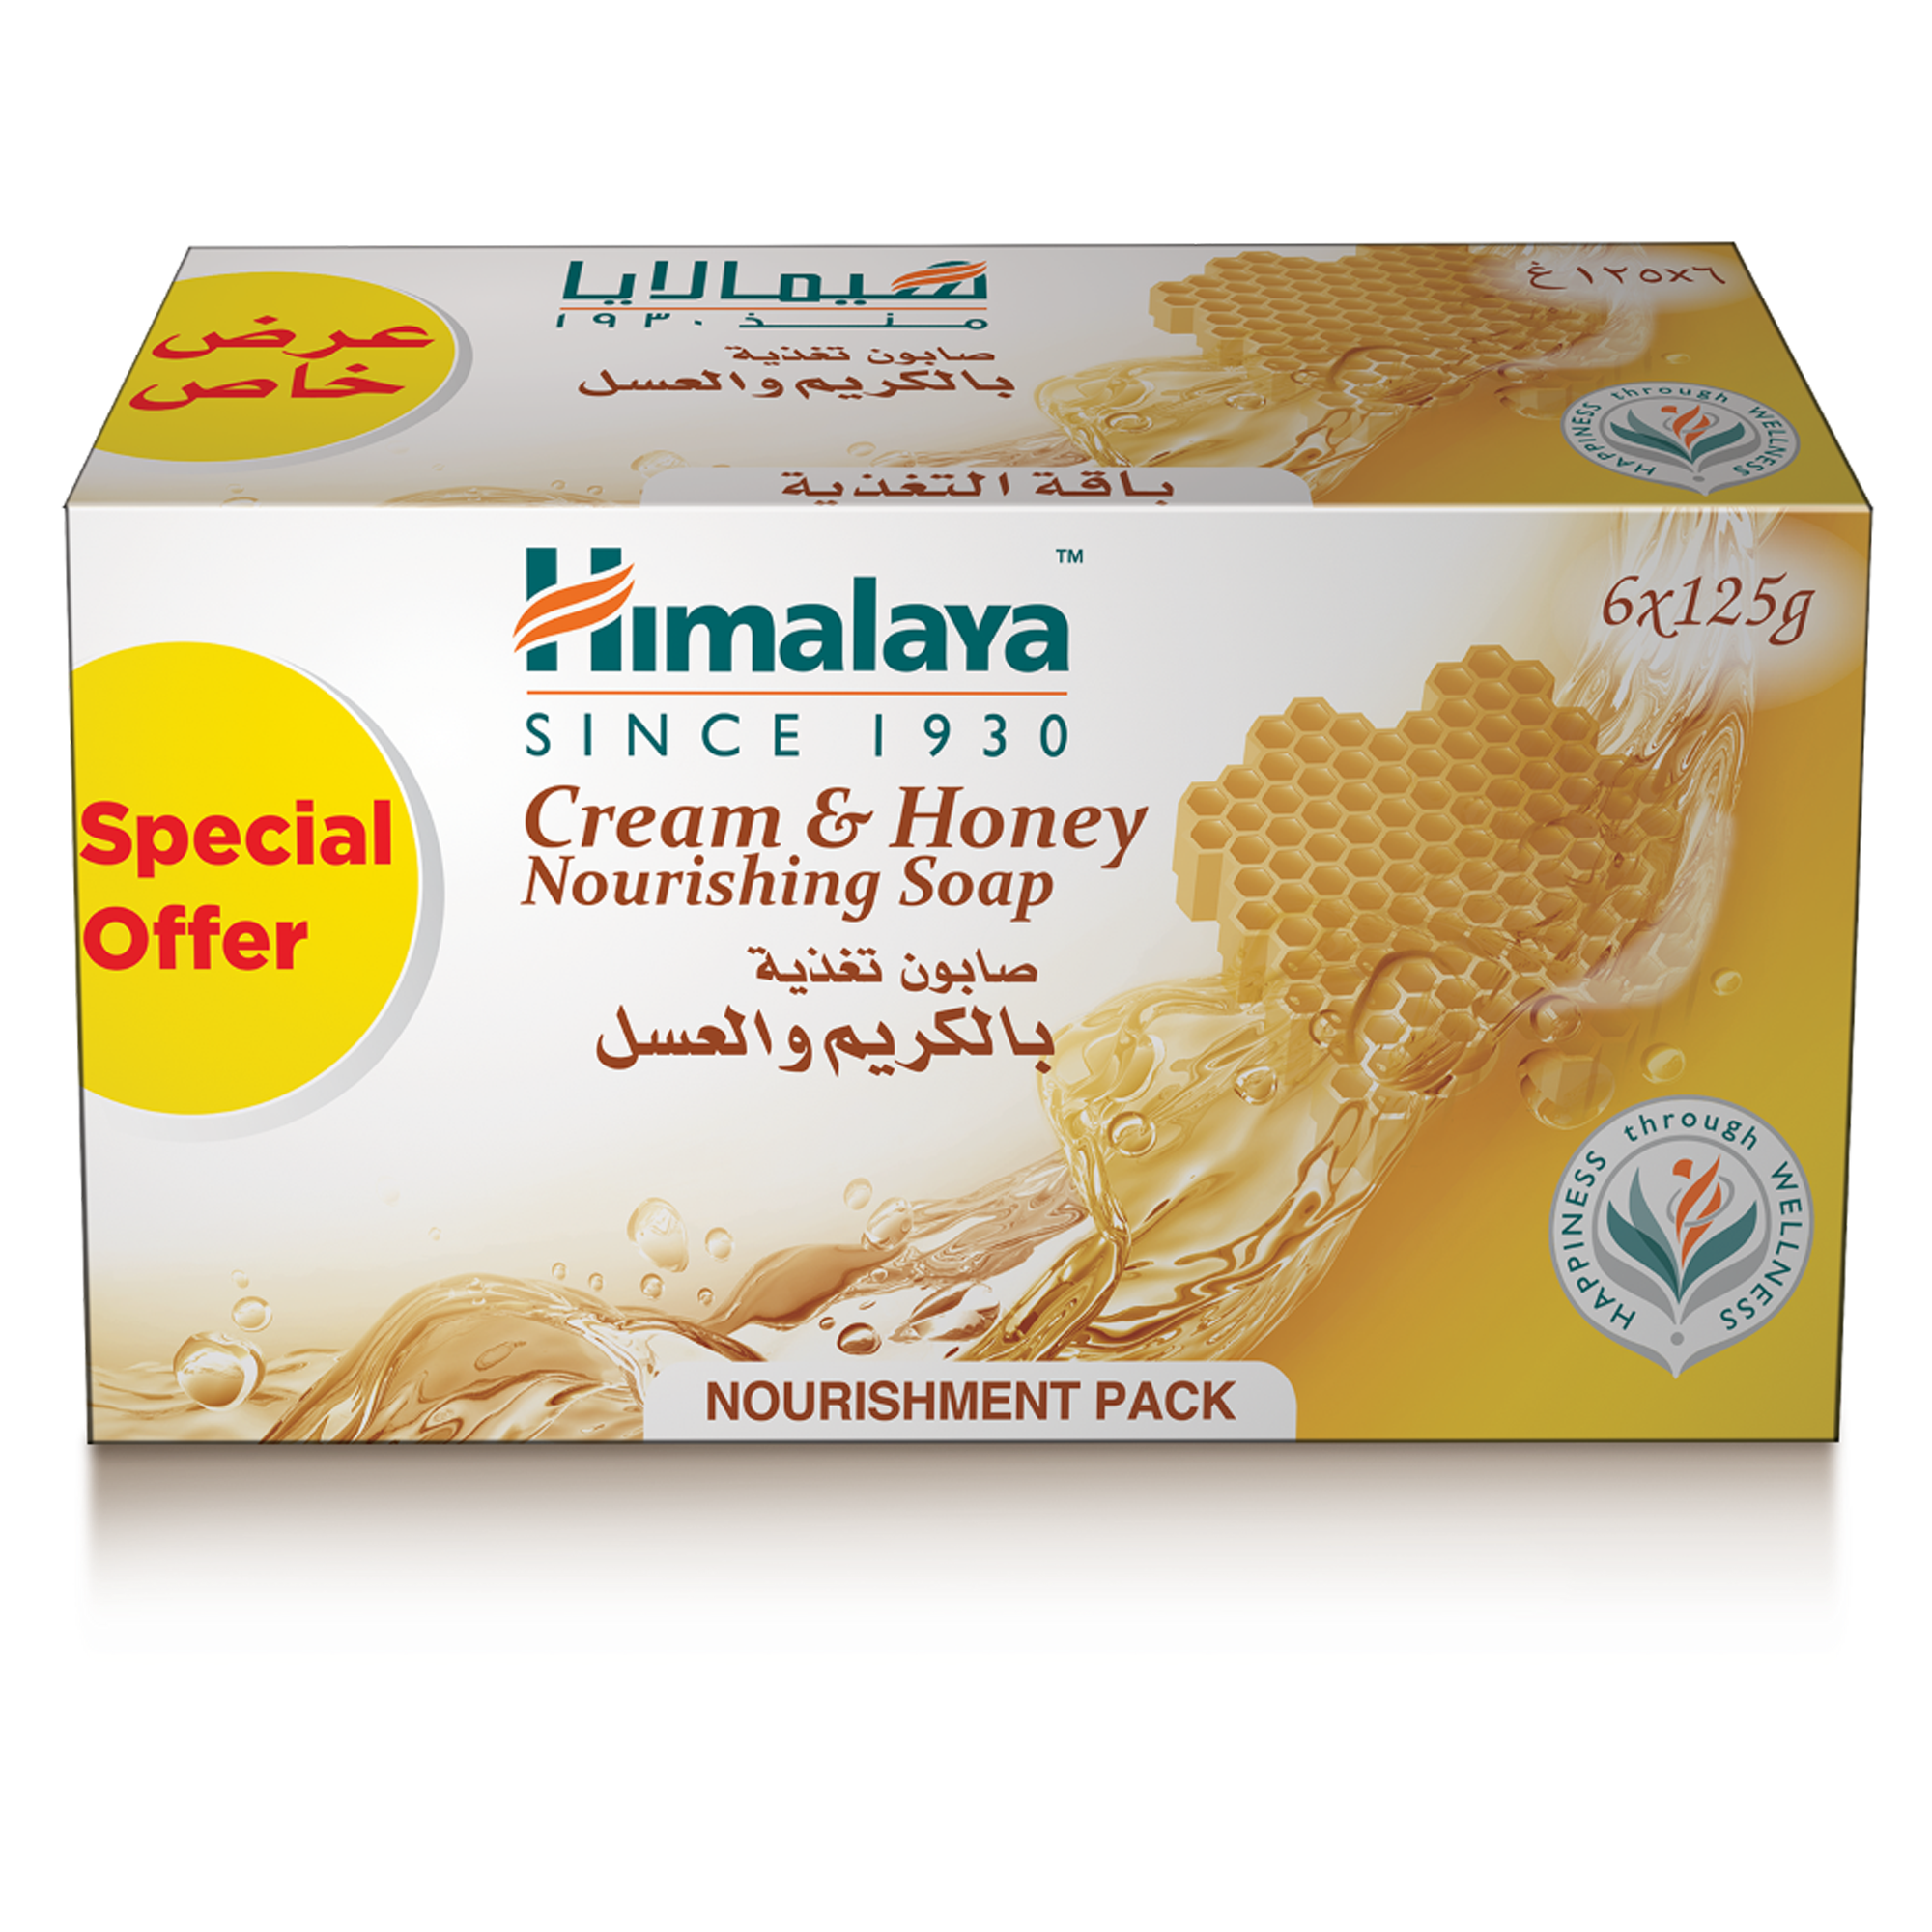 Himalaya Cream & Honey Nourishing Soap 6x125g - Nourishes Skin